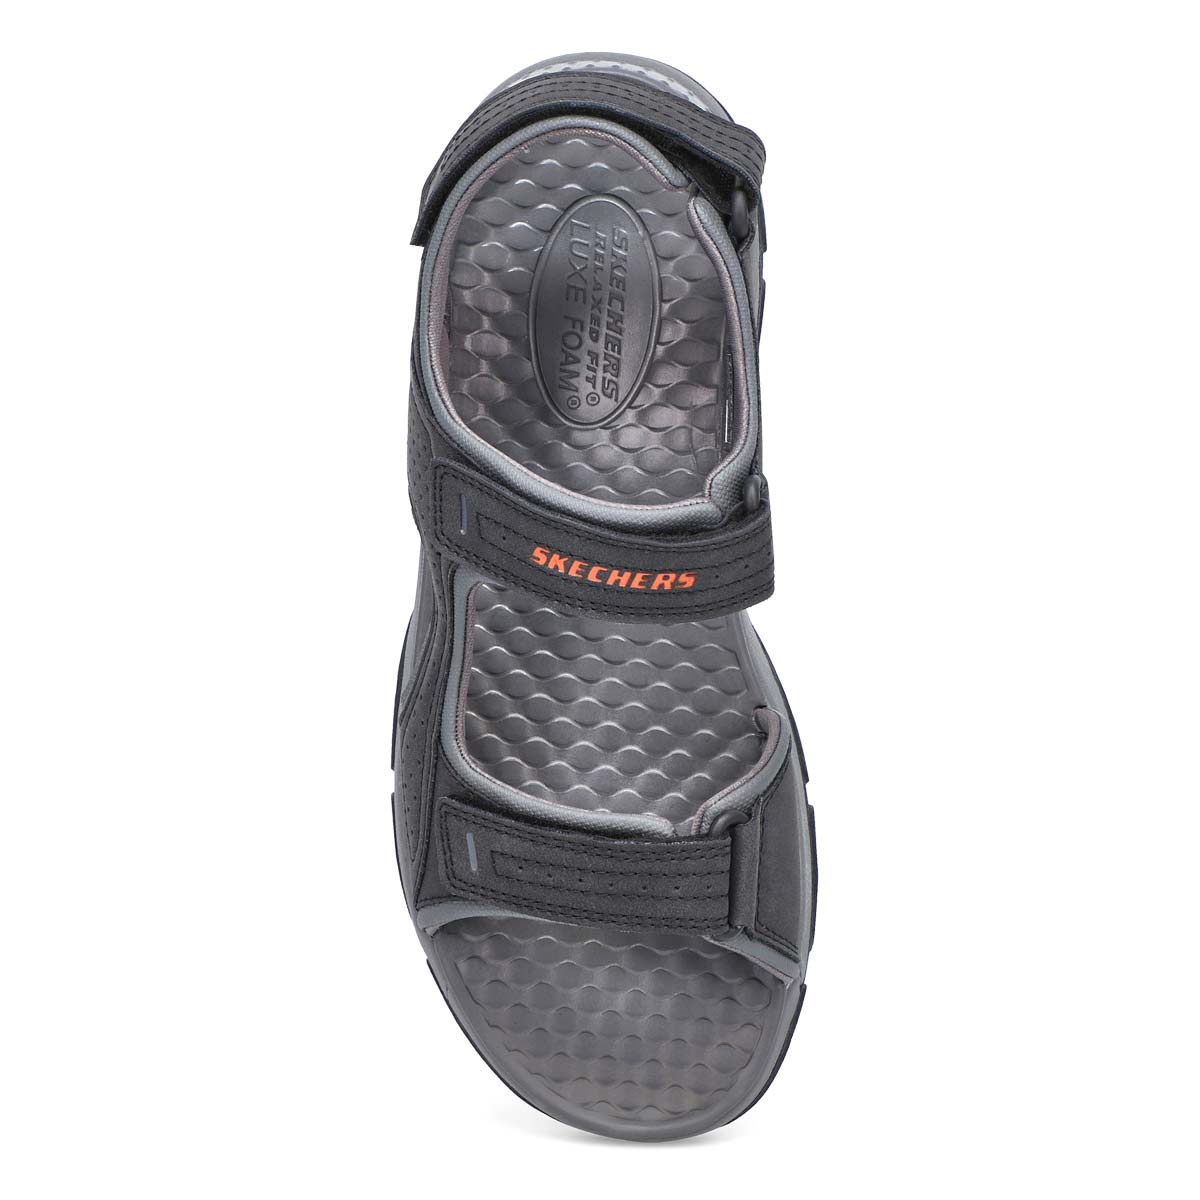 Men's Tresmen Garo Sport Sandal - Black